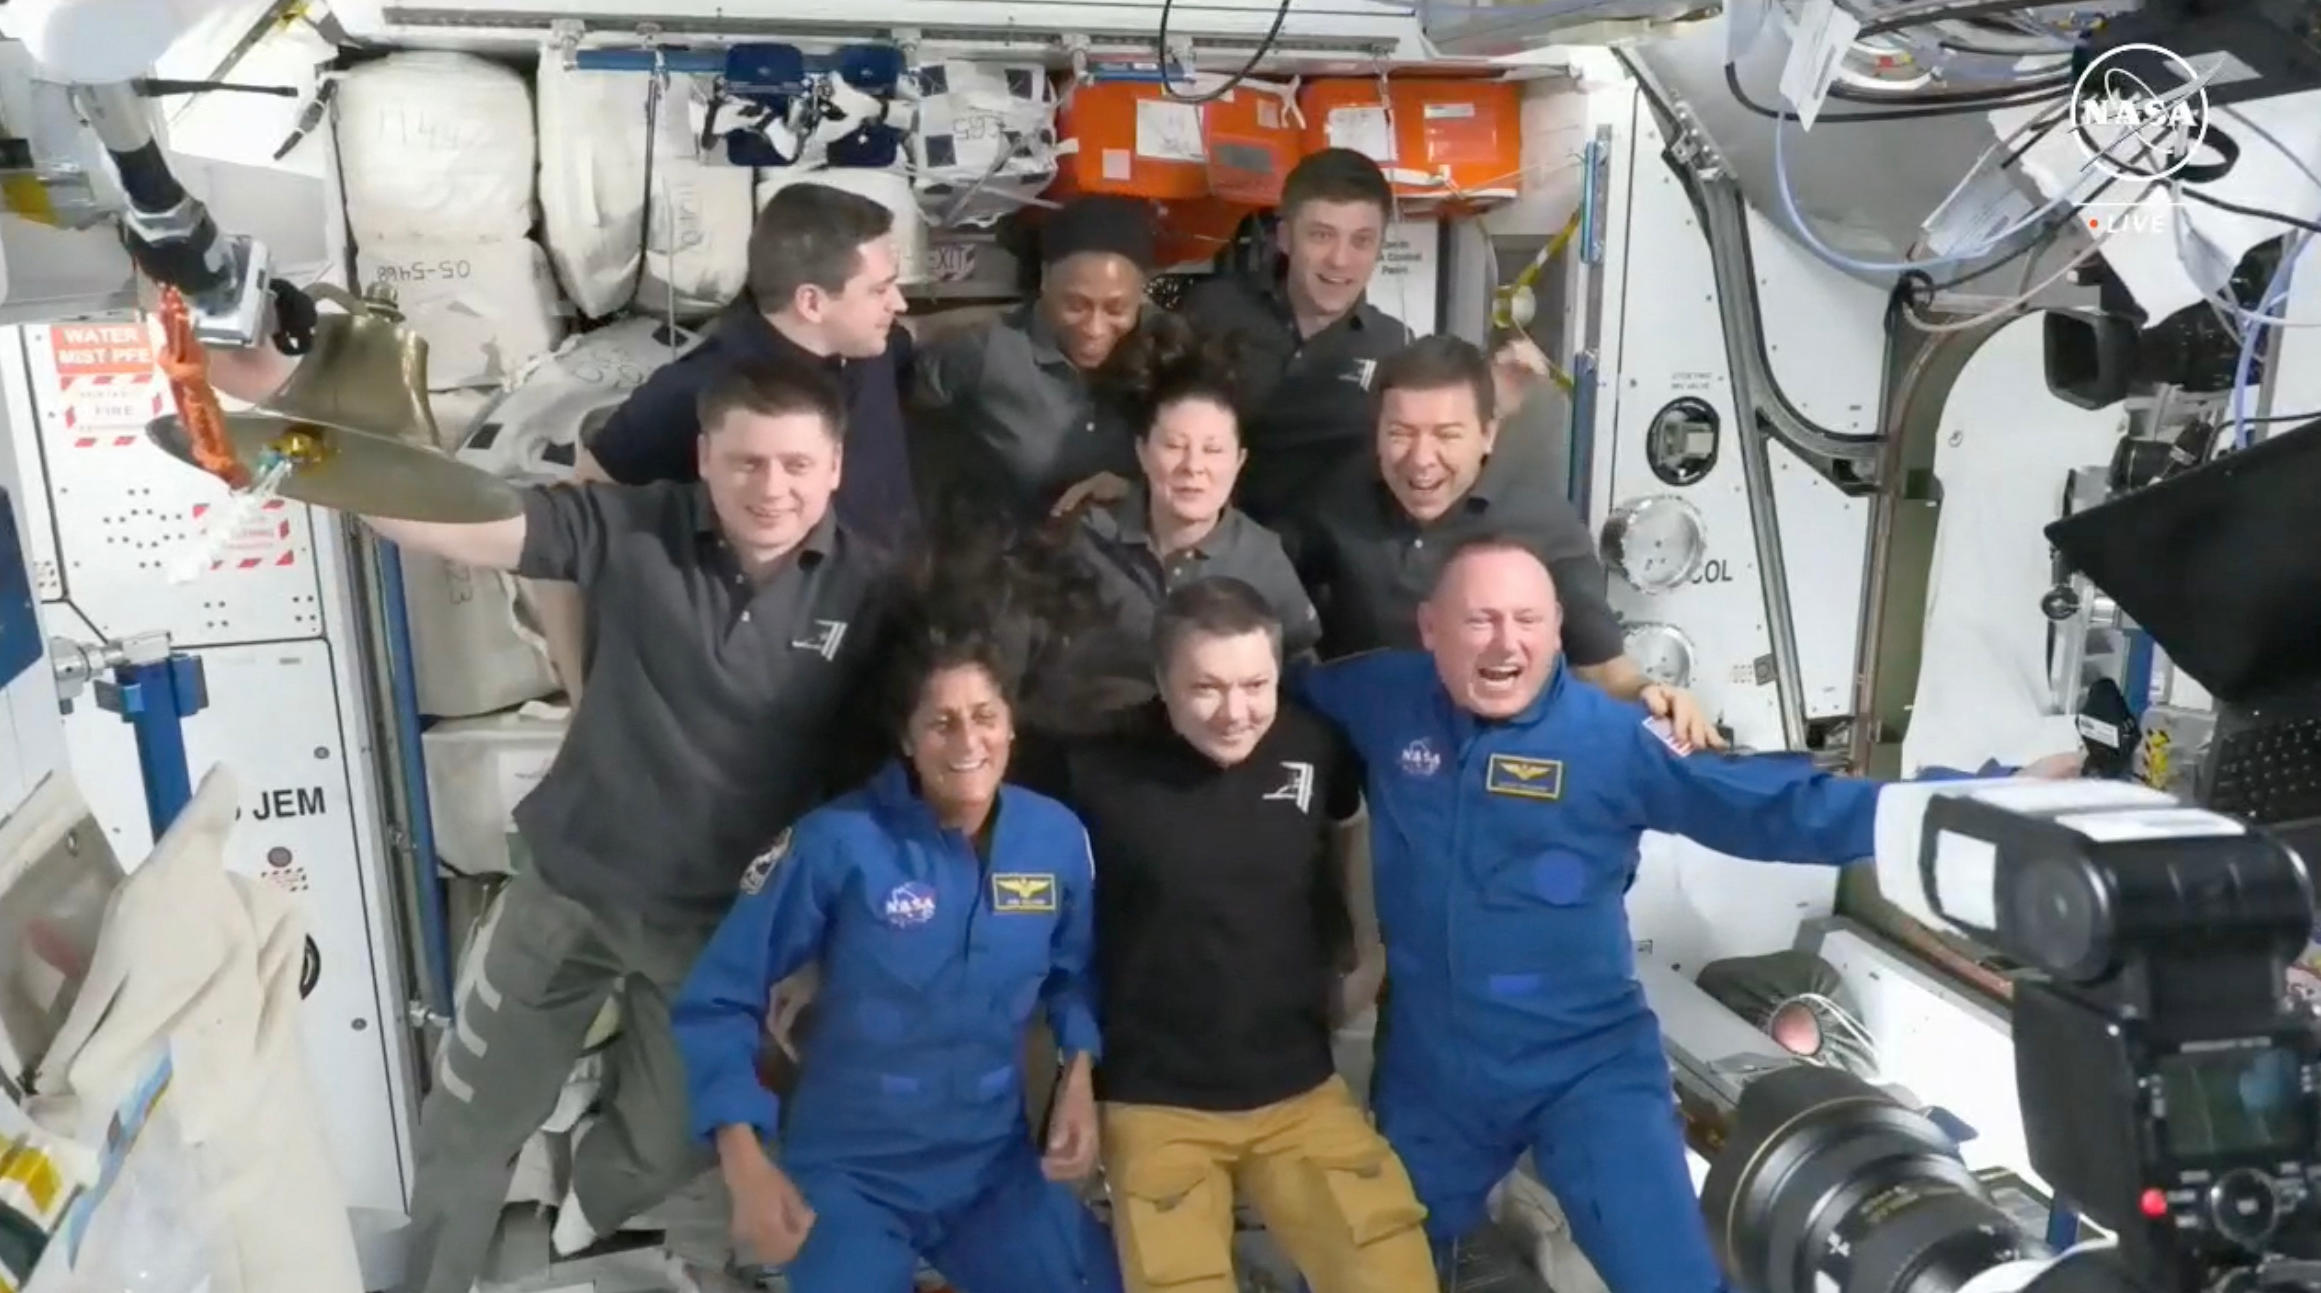 Les astronautes de Starliner, Suni Williams et Butch Wilmore ont été accueillis par les sept autres astronautes à bord de l'ISS. AFP/Nasa